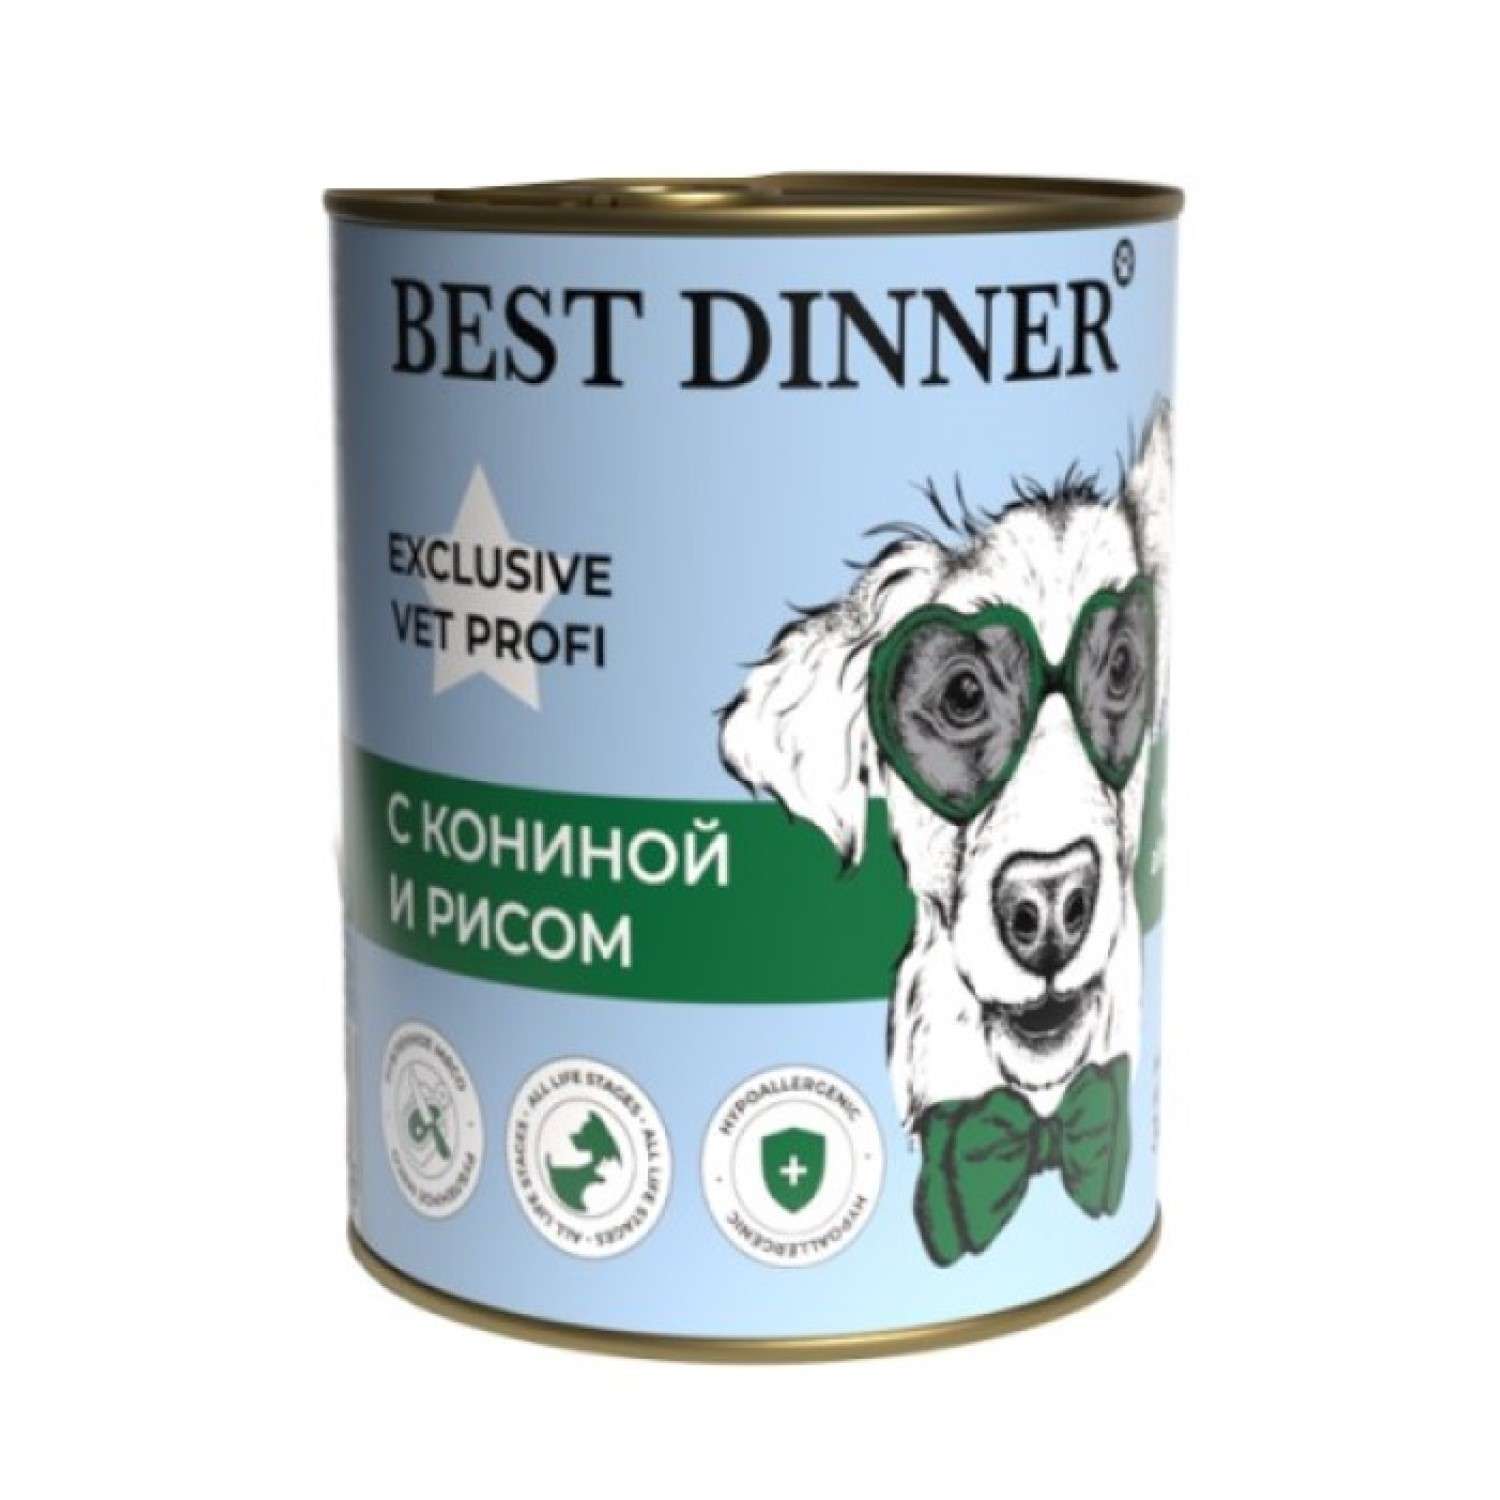 Корм для собак Best Dinner 0.34кг Exclusive Vet Profi Hypoallergenic с кониной и рисом - фото 1